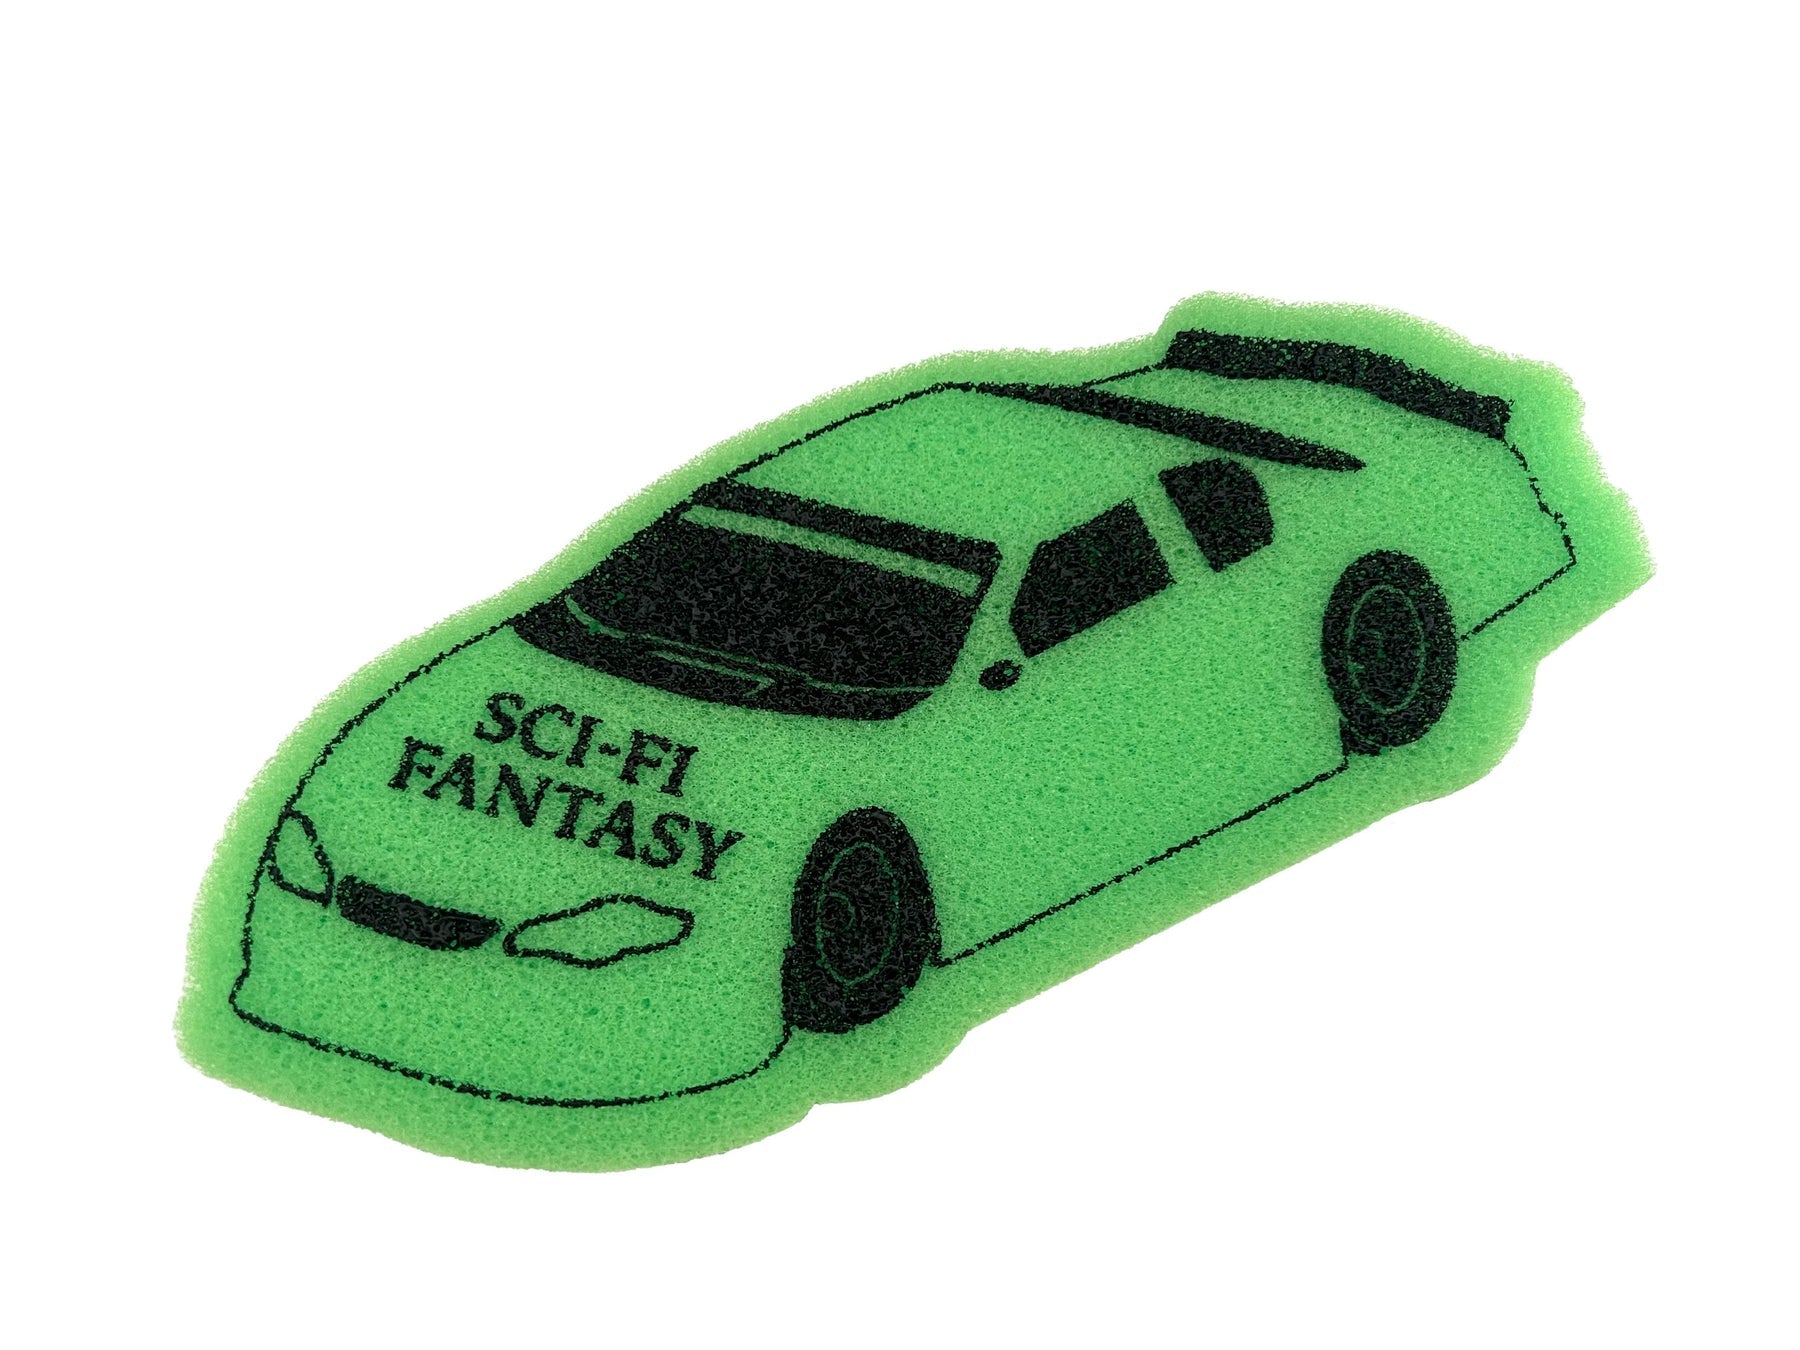 Sci-Fi Fantasy Car Sponge - Apple Valley Emporium